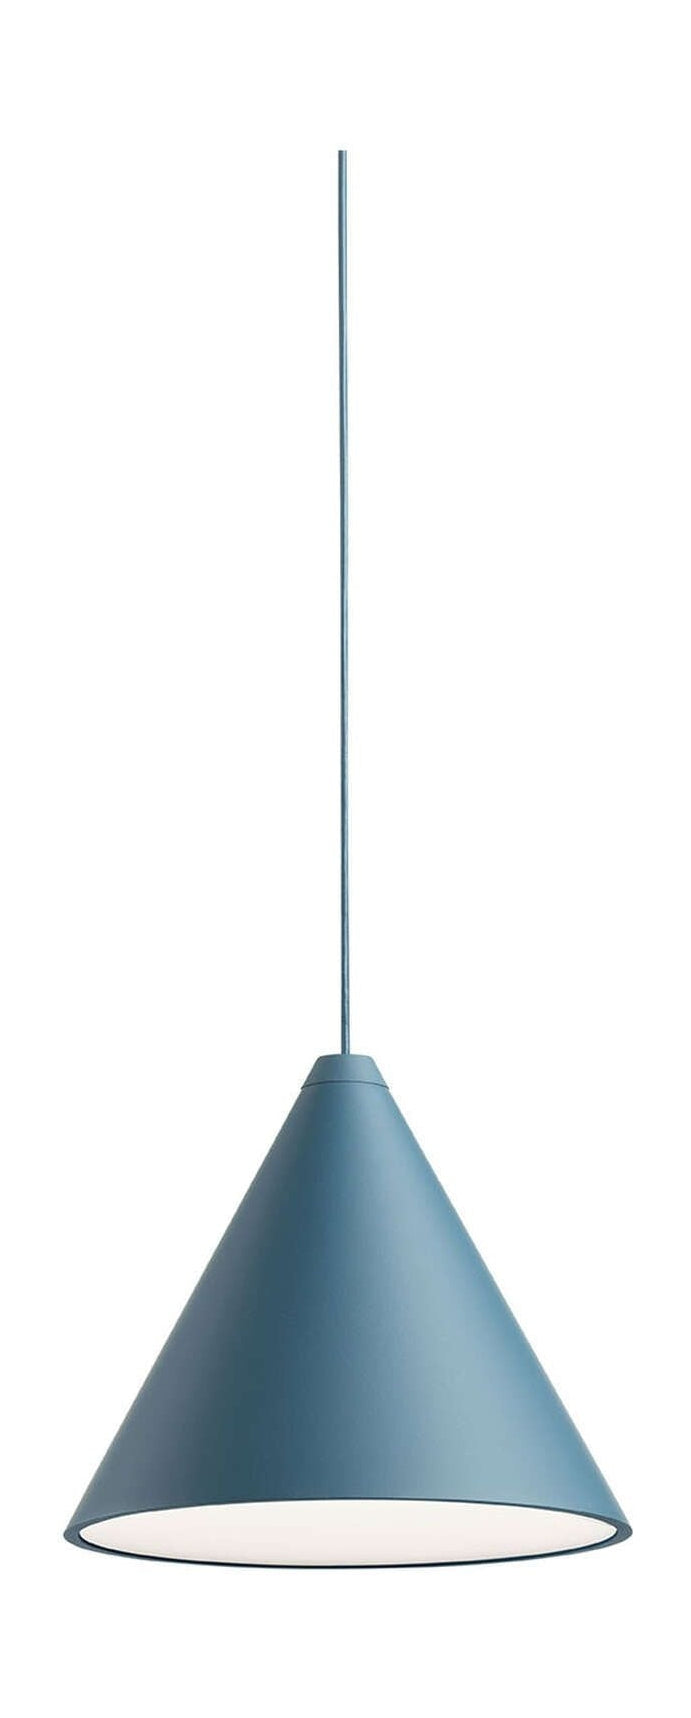 Lampa wisiorka na głowicę sznurkową FLOS 22 m, niebieski